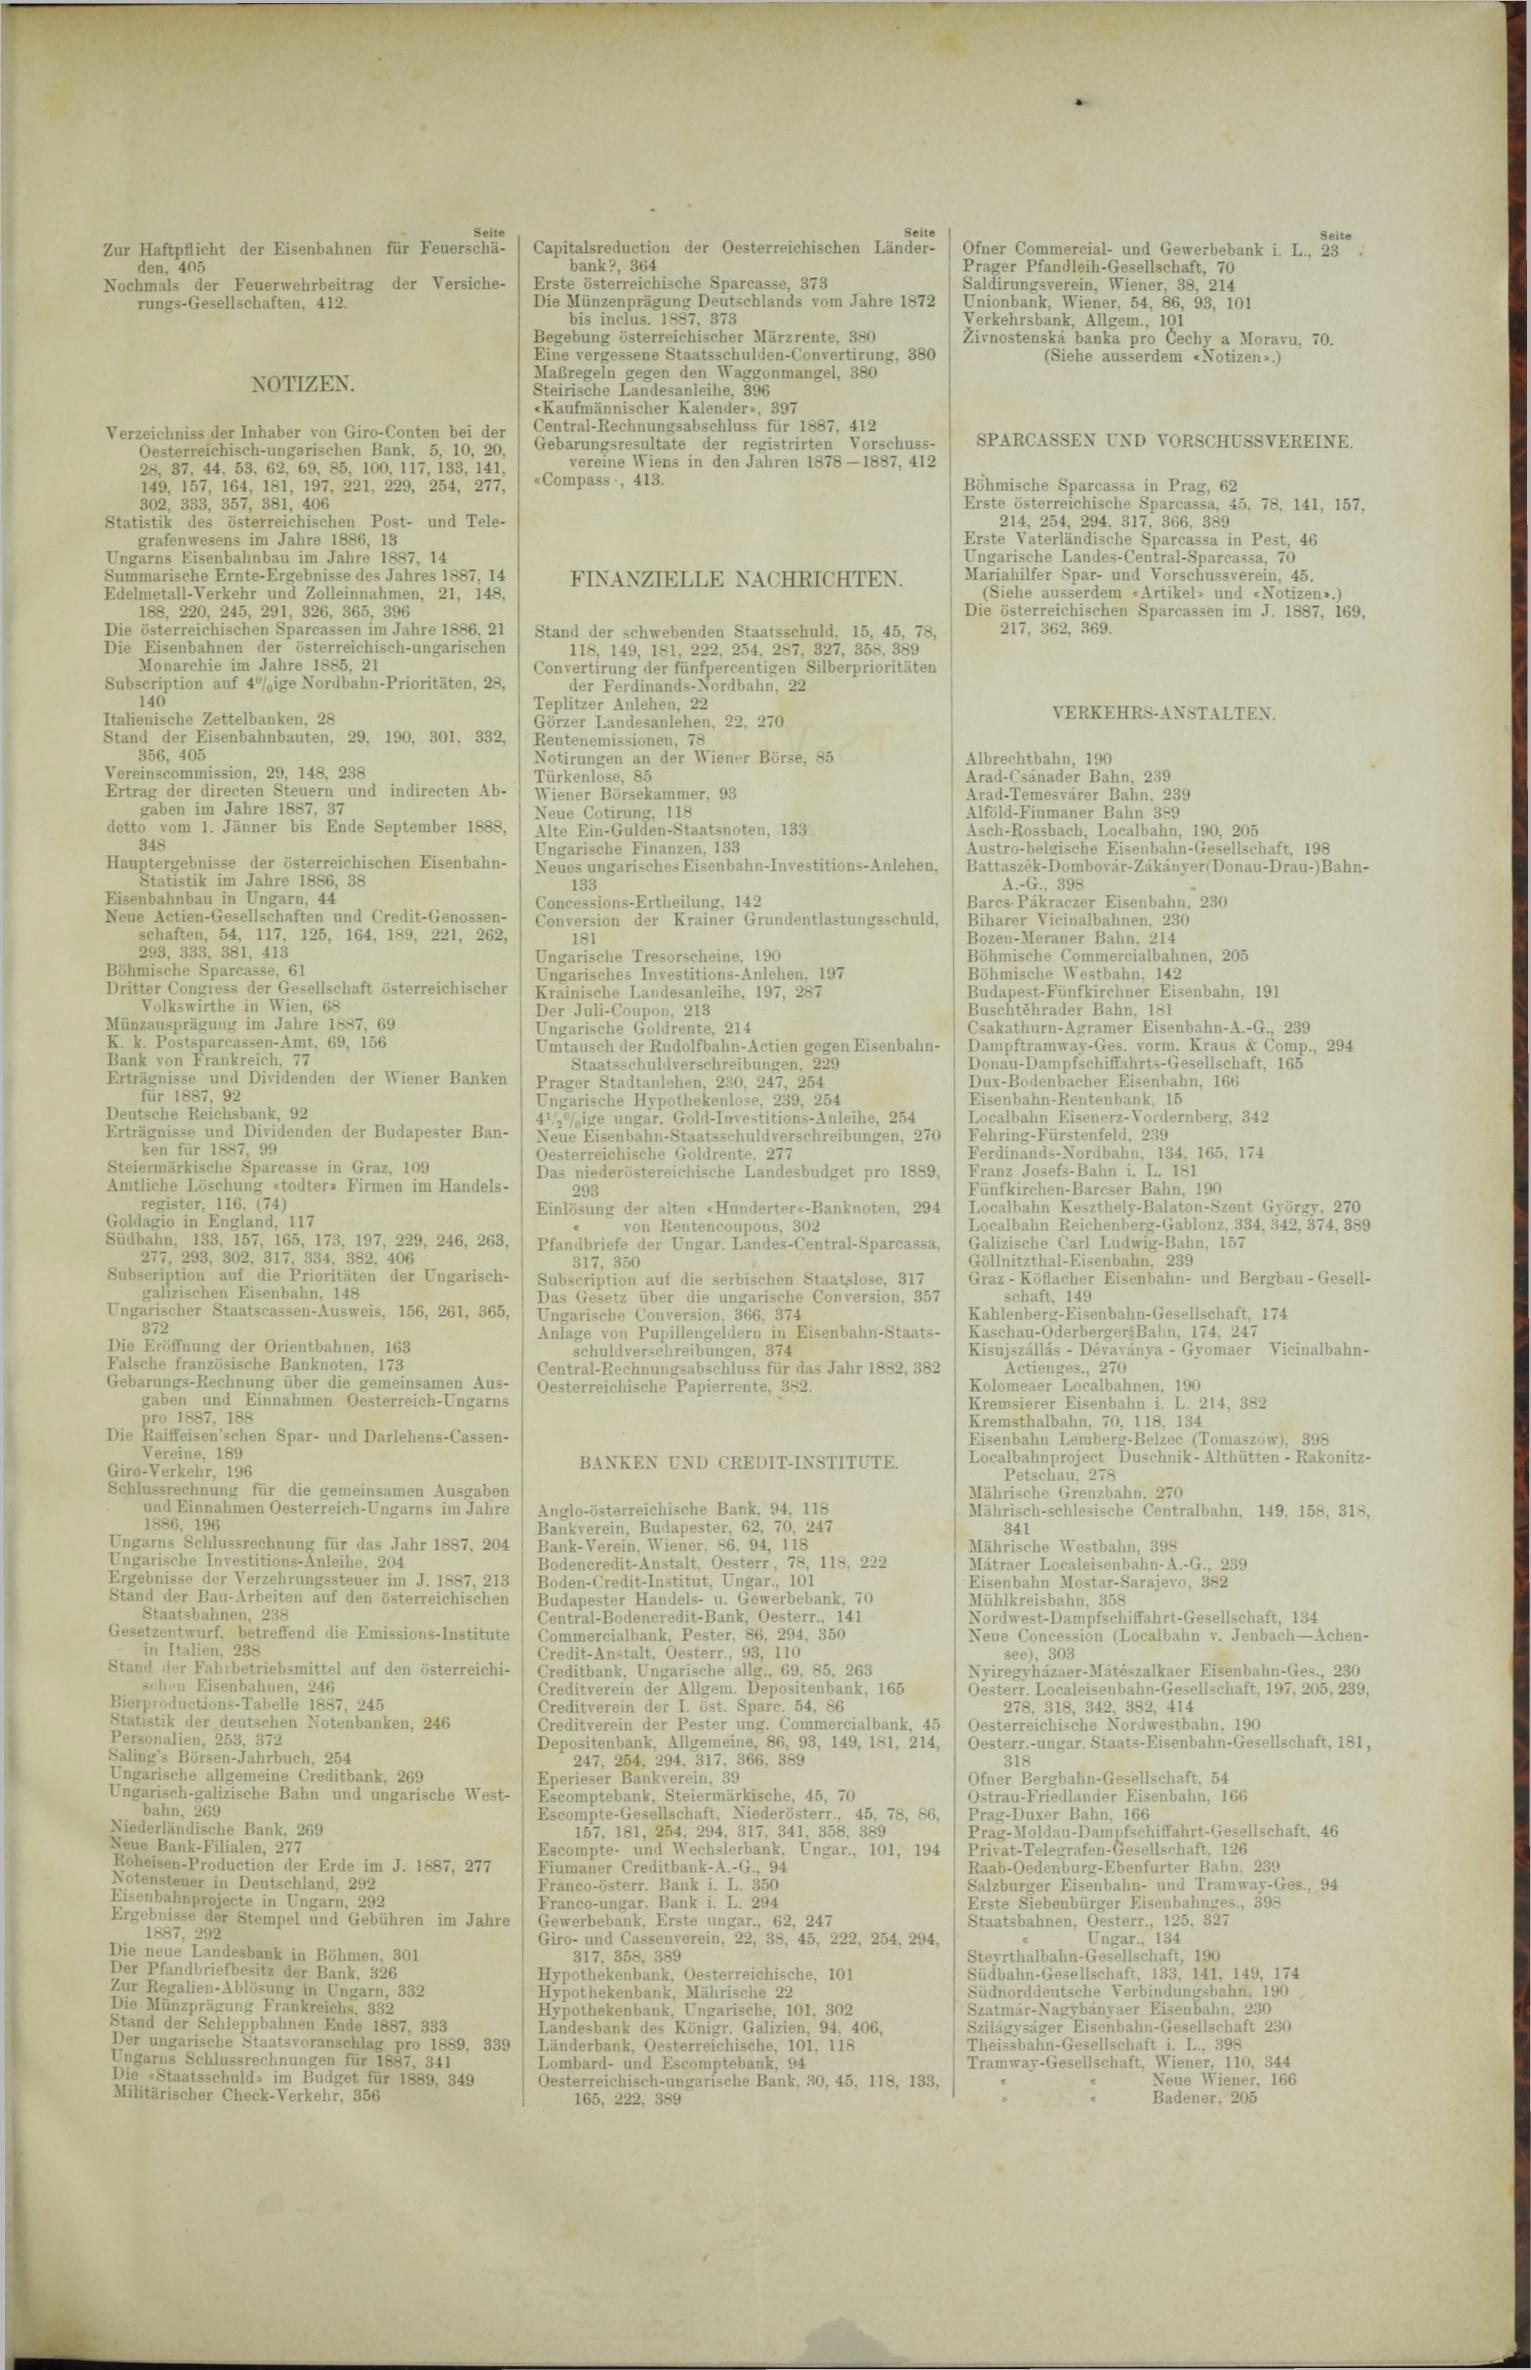 Der Tresor 11.10.1888 - Seite 11